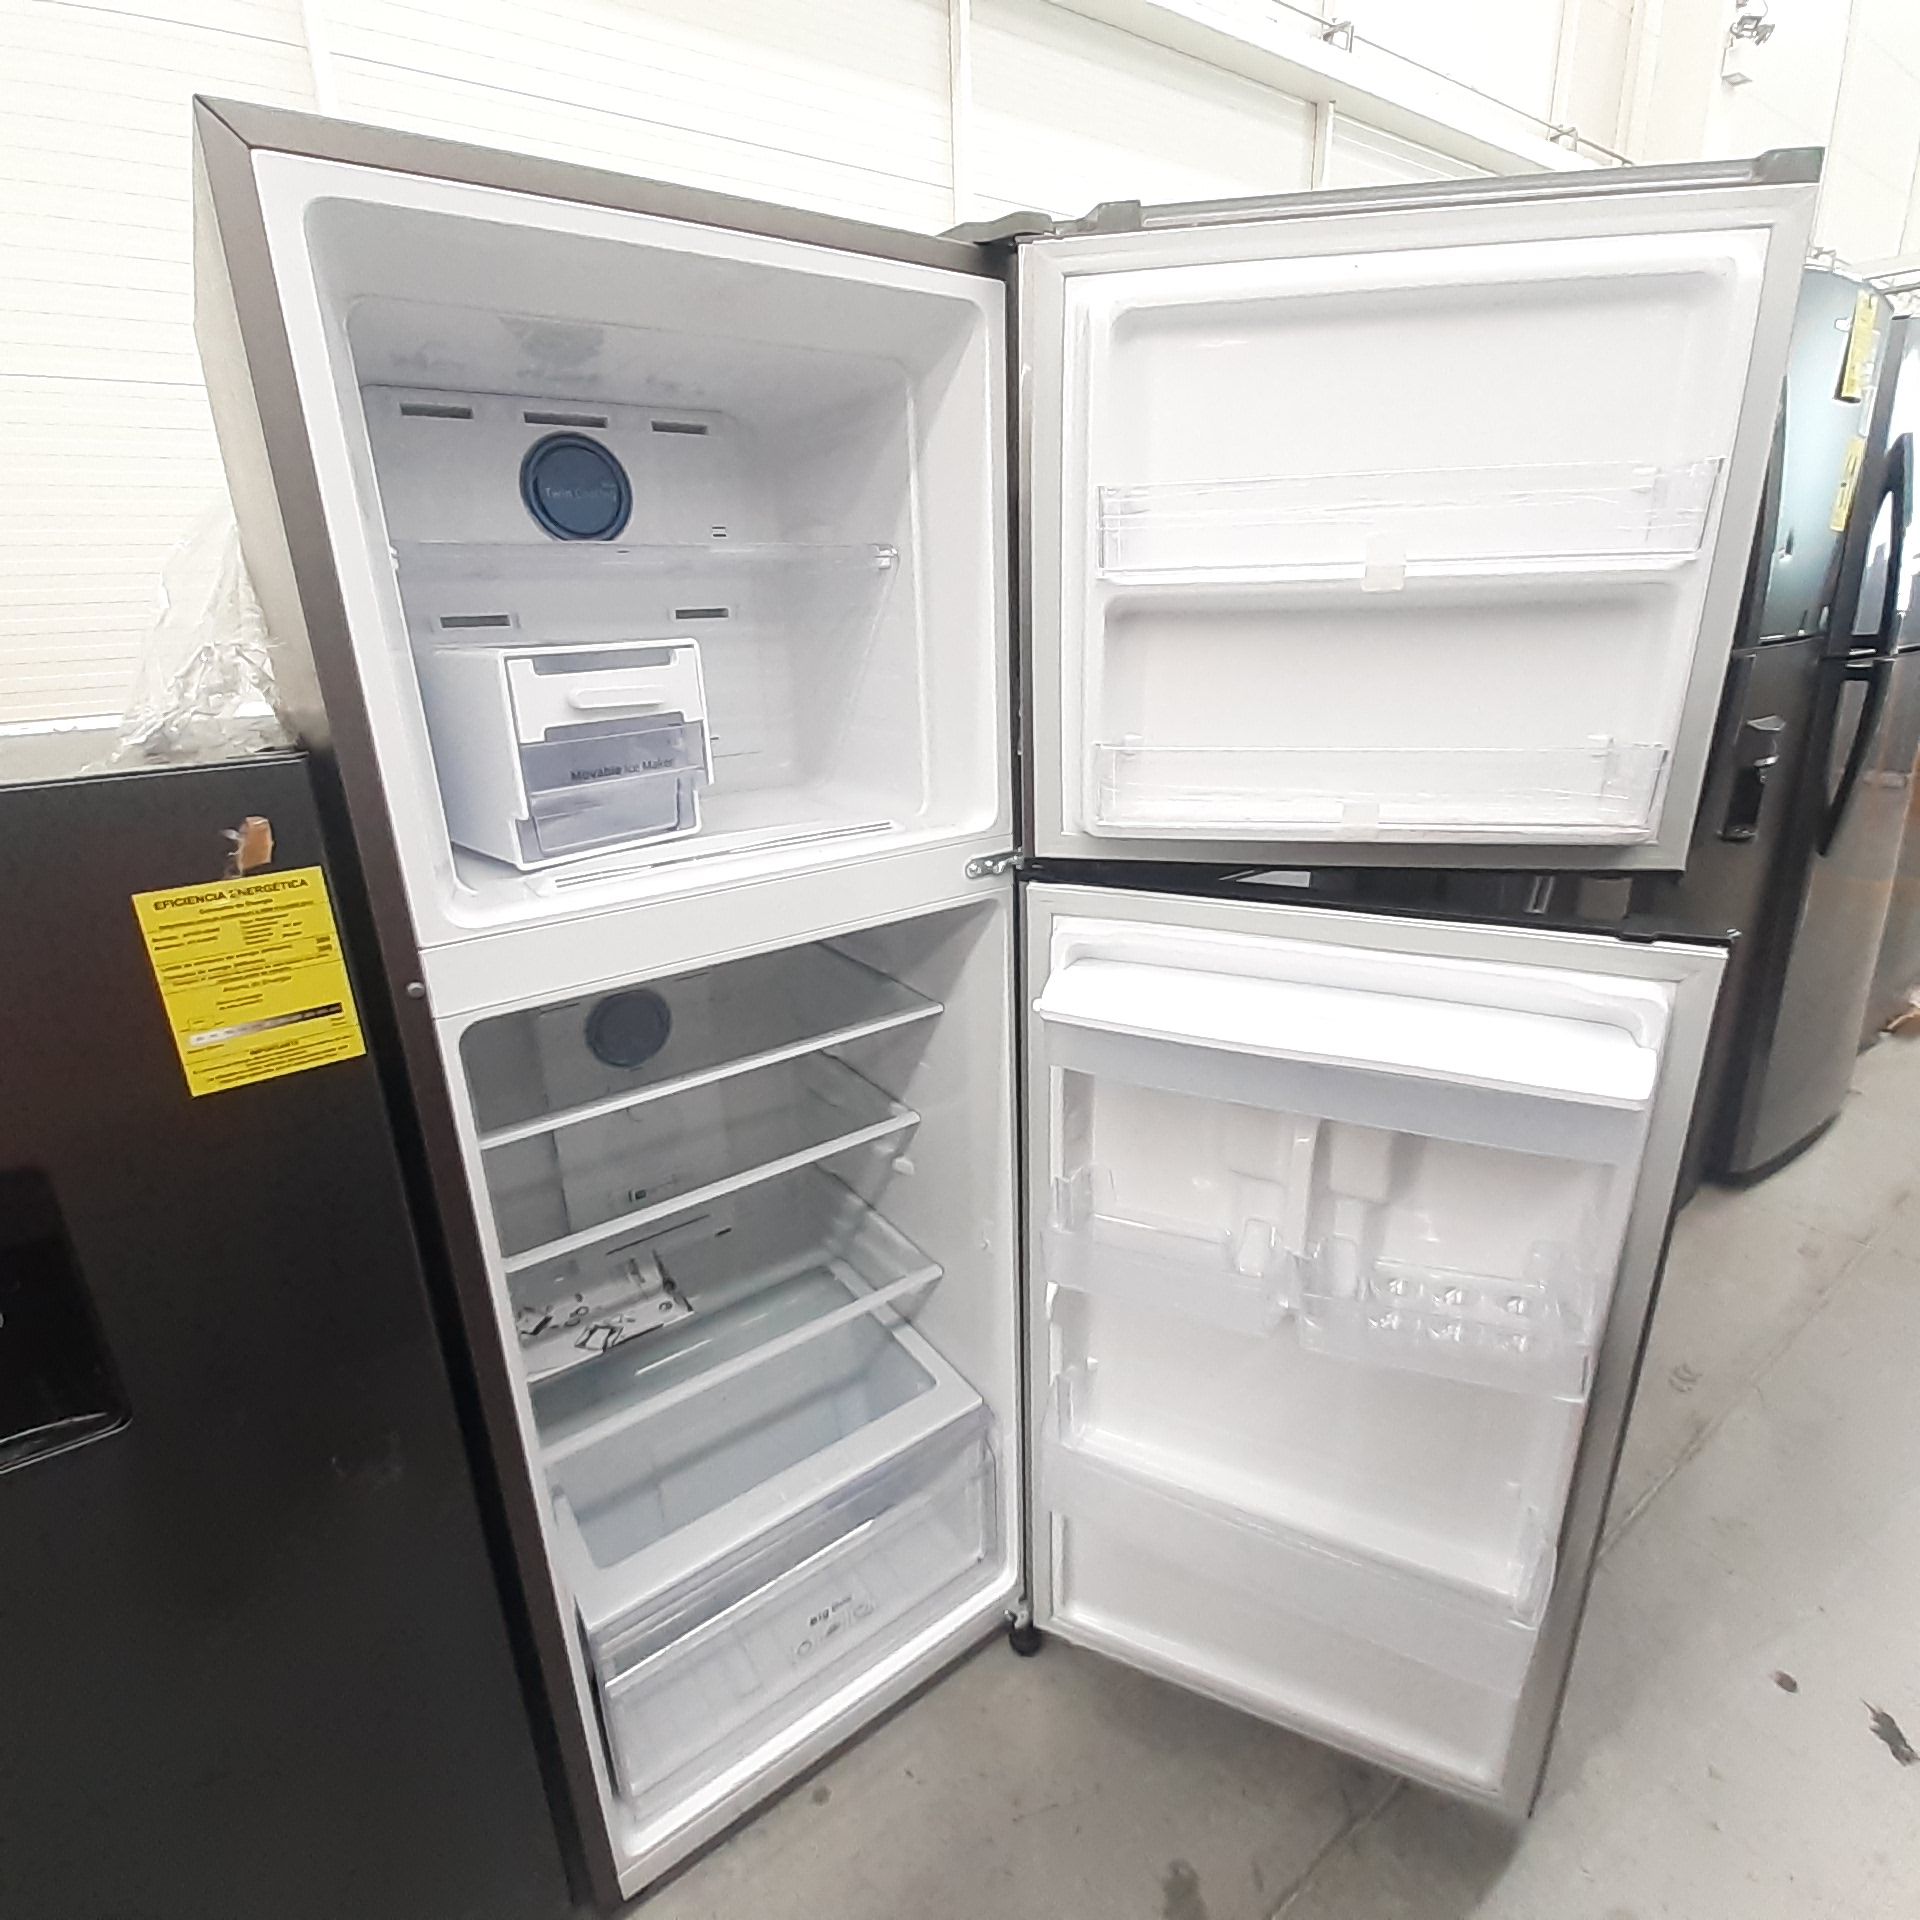 Lote De 2 Refrigeradores: 1 Refrigerador Con Dispensador De Agua Marca Samsung, 1 Refrigerador Marca - Image 6 of 18